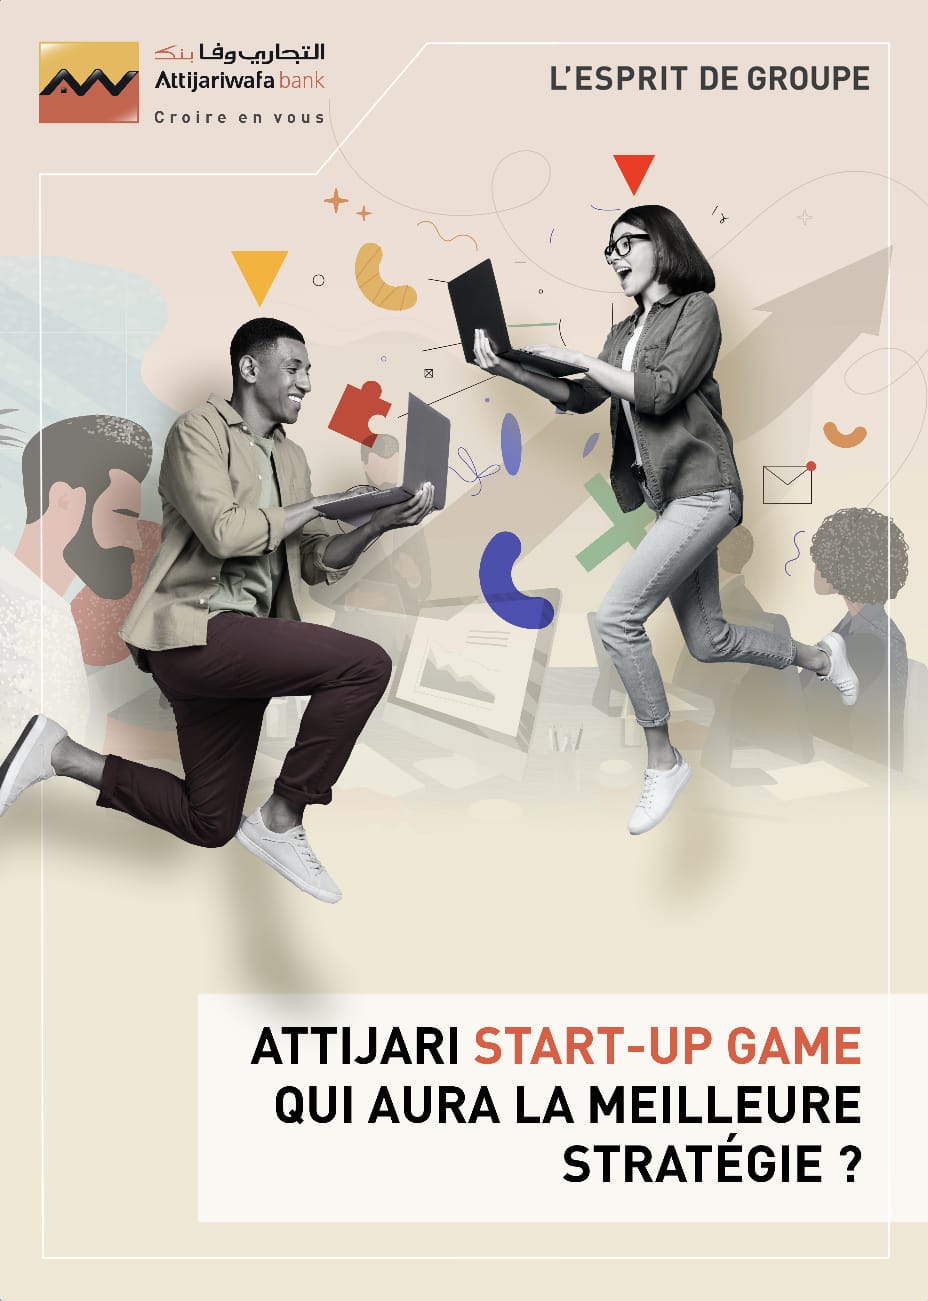 مجموعة التجاري وفا بنك تطلق النسخة الثانية من لعبة الأعمال”Attijari Startup Game”